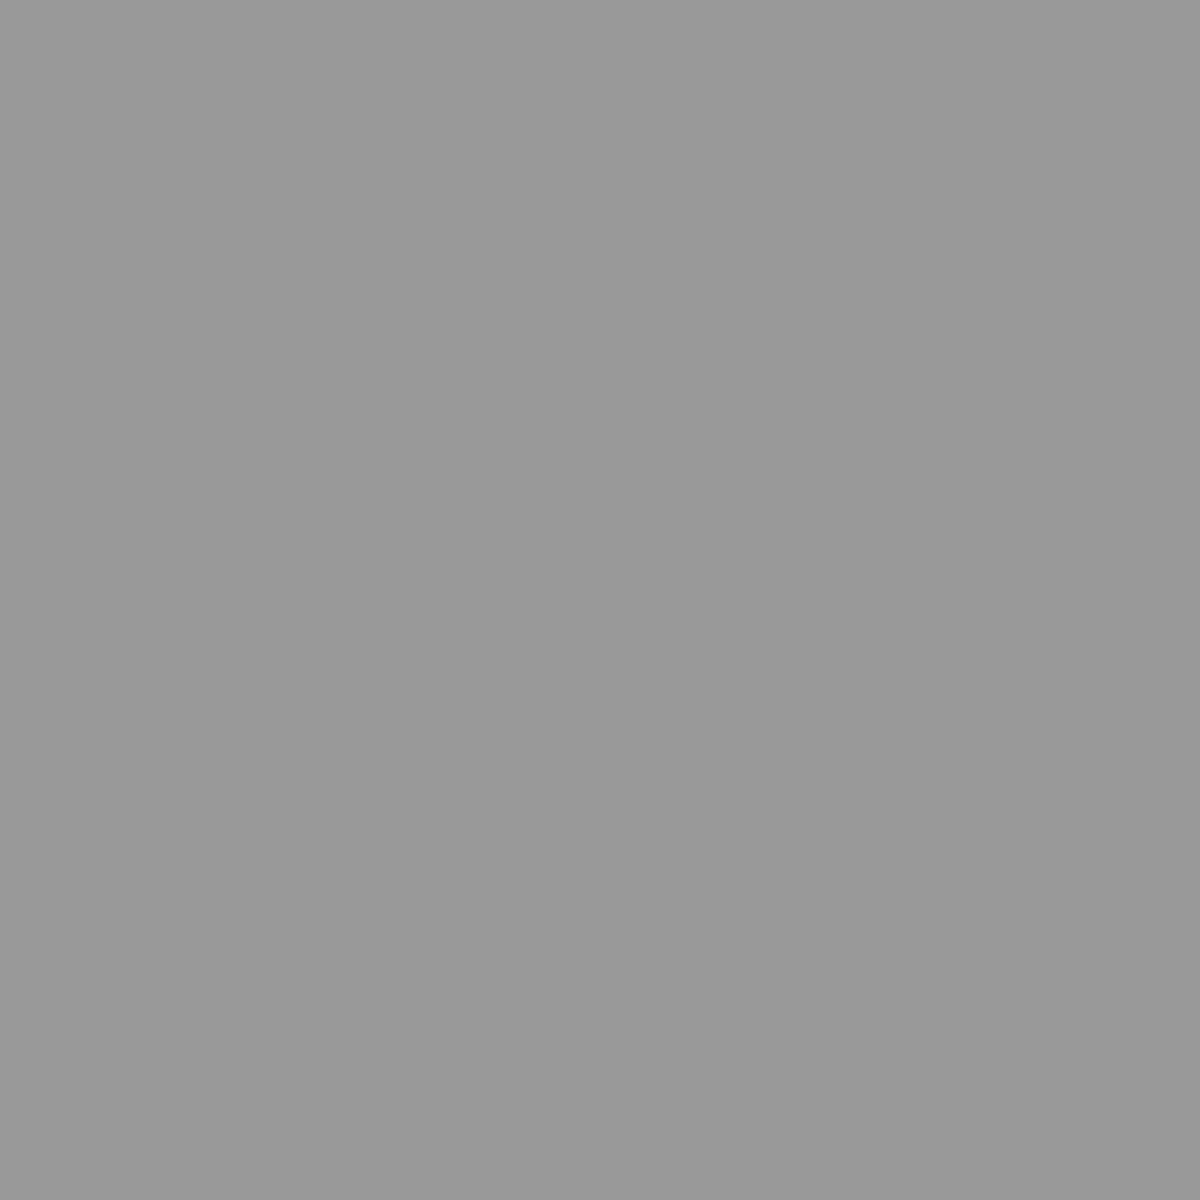 BESCHRIJVING Iseki Sial grijs 1 liter (kopie) Extra info: 1 liter verf Grijs (Sial TF types) Na verdunnen spuitbaar Zeer goede kwaliteit Grote temperatuur bestendigheid Korte droogtijd Afbeeldingen slechts ter indicatie!